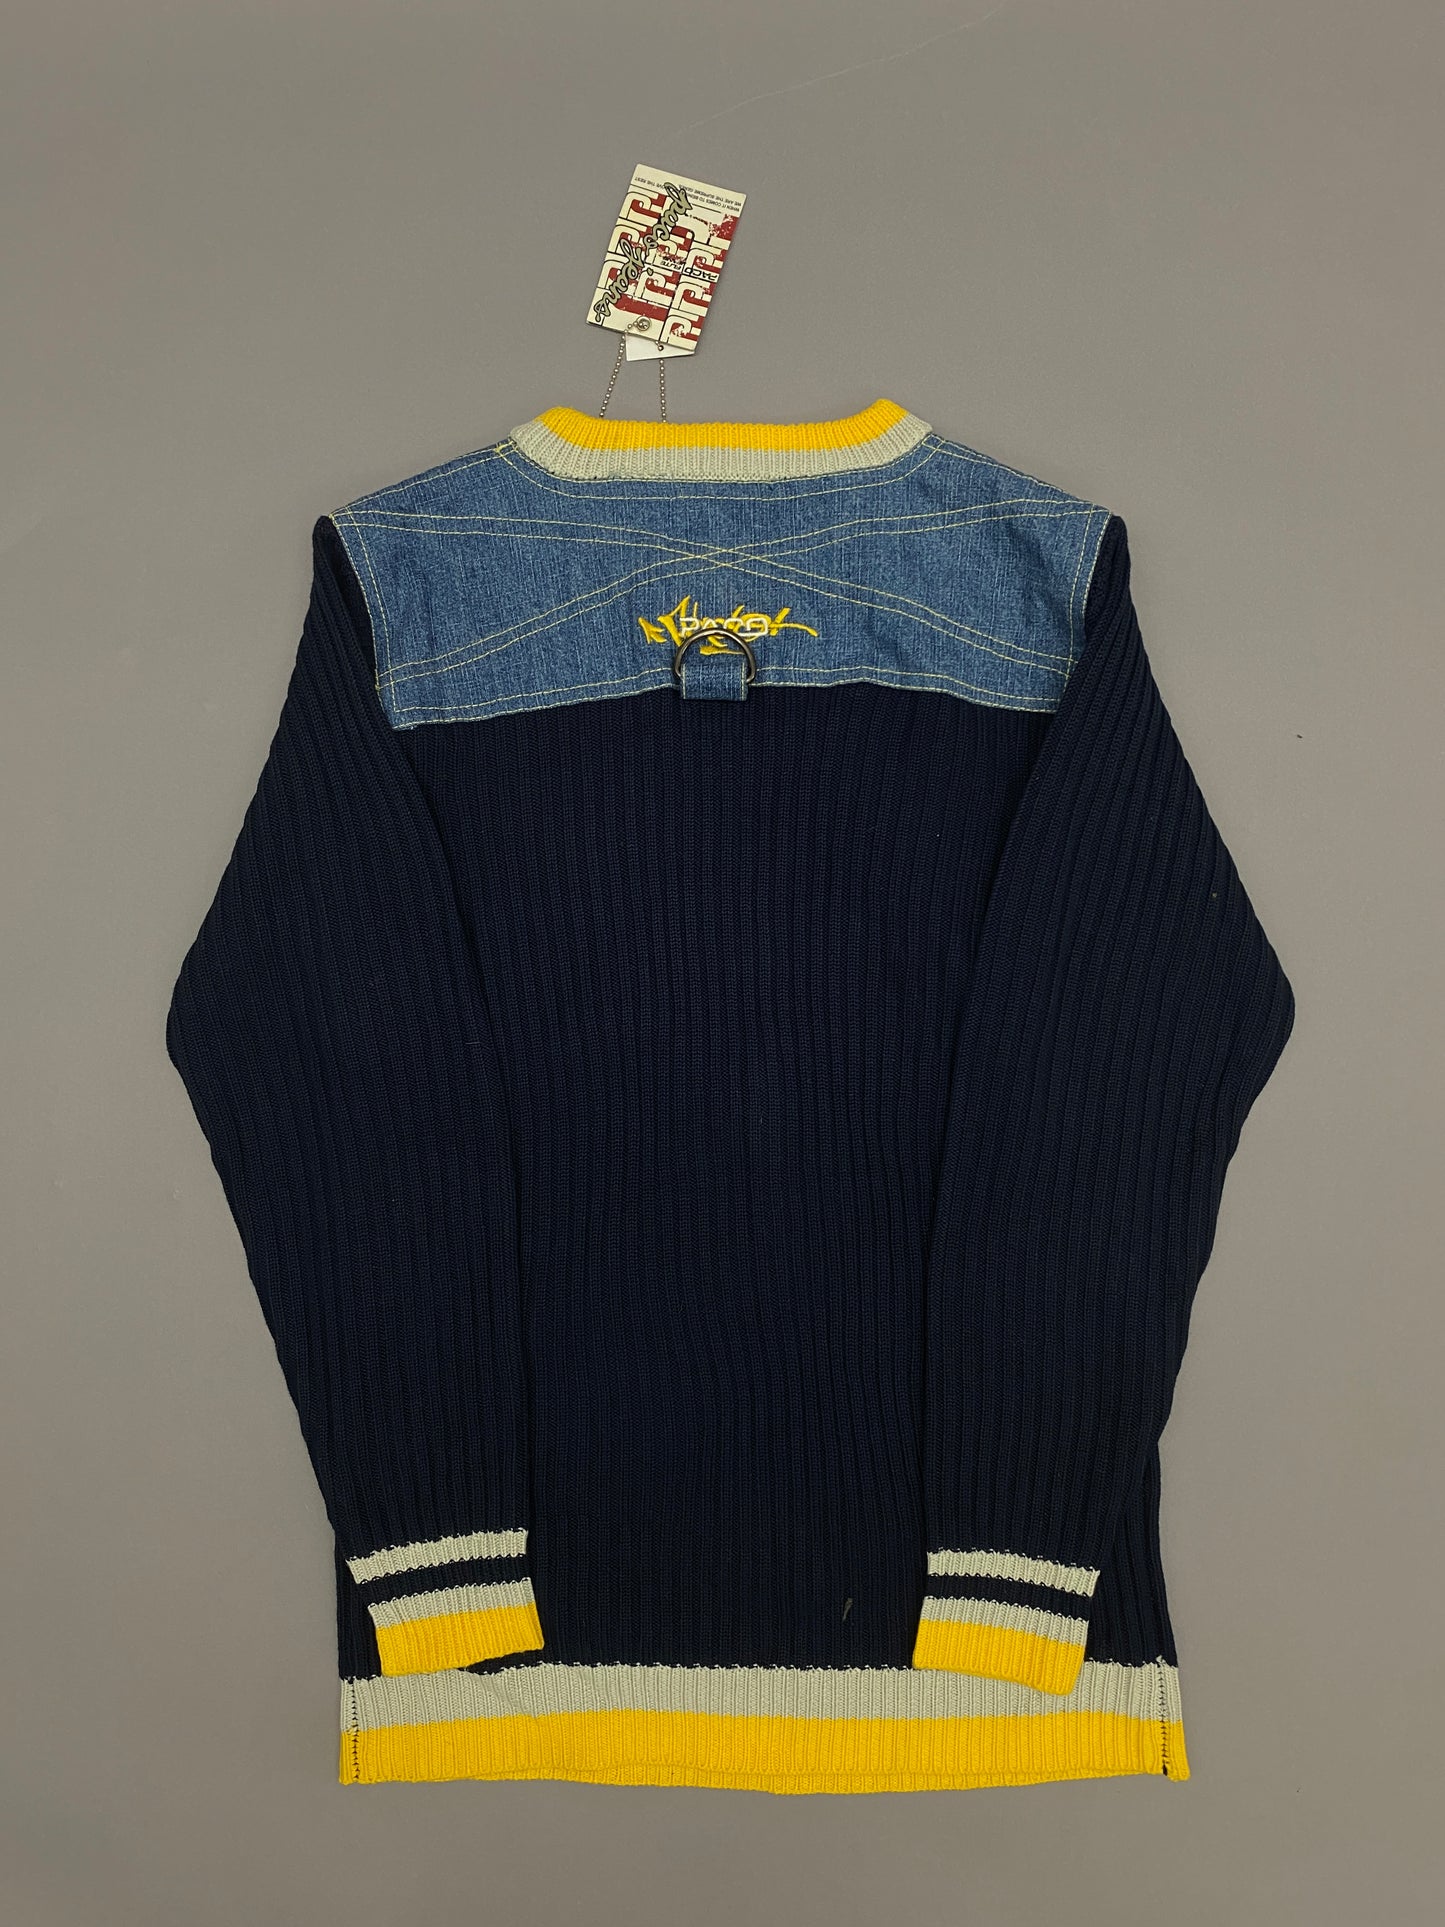 Suéter Paco Jeans Vintage